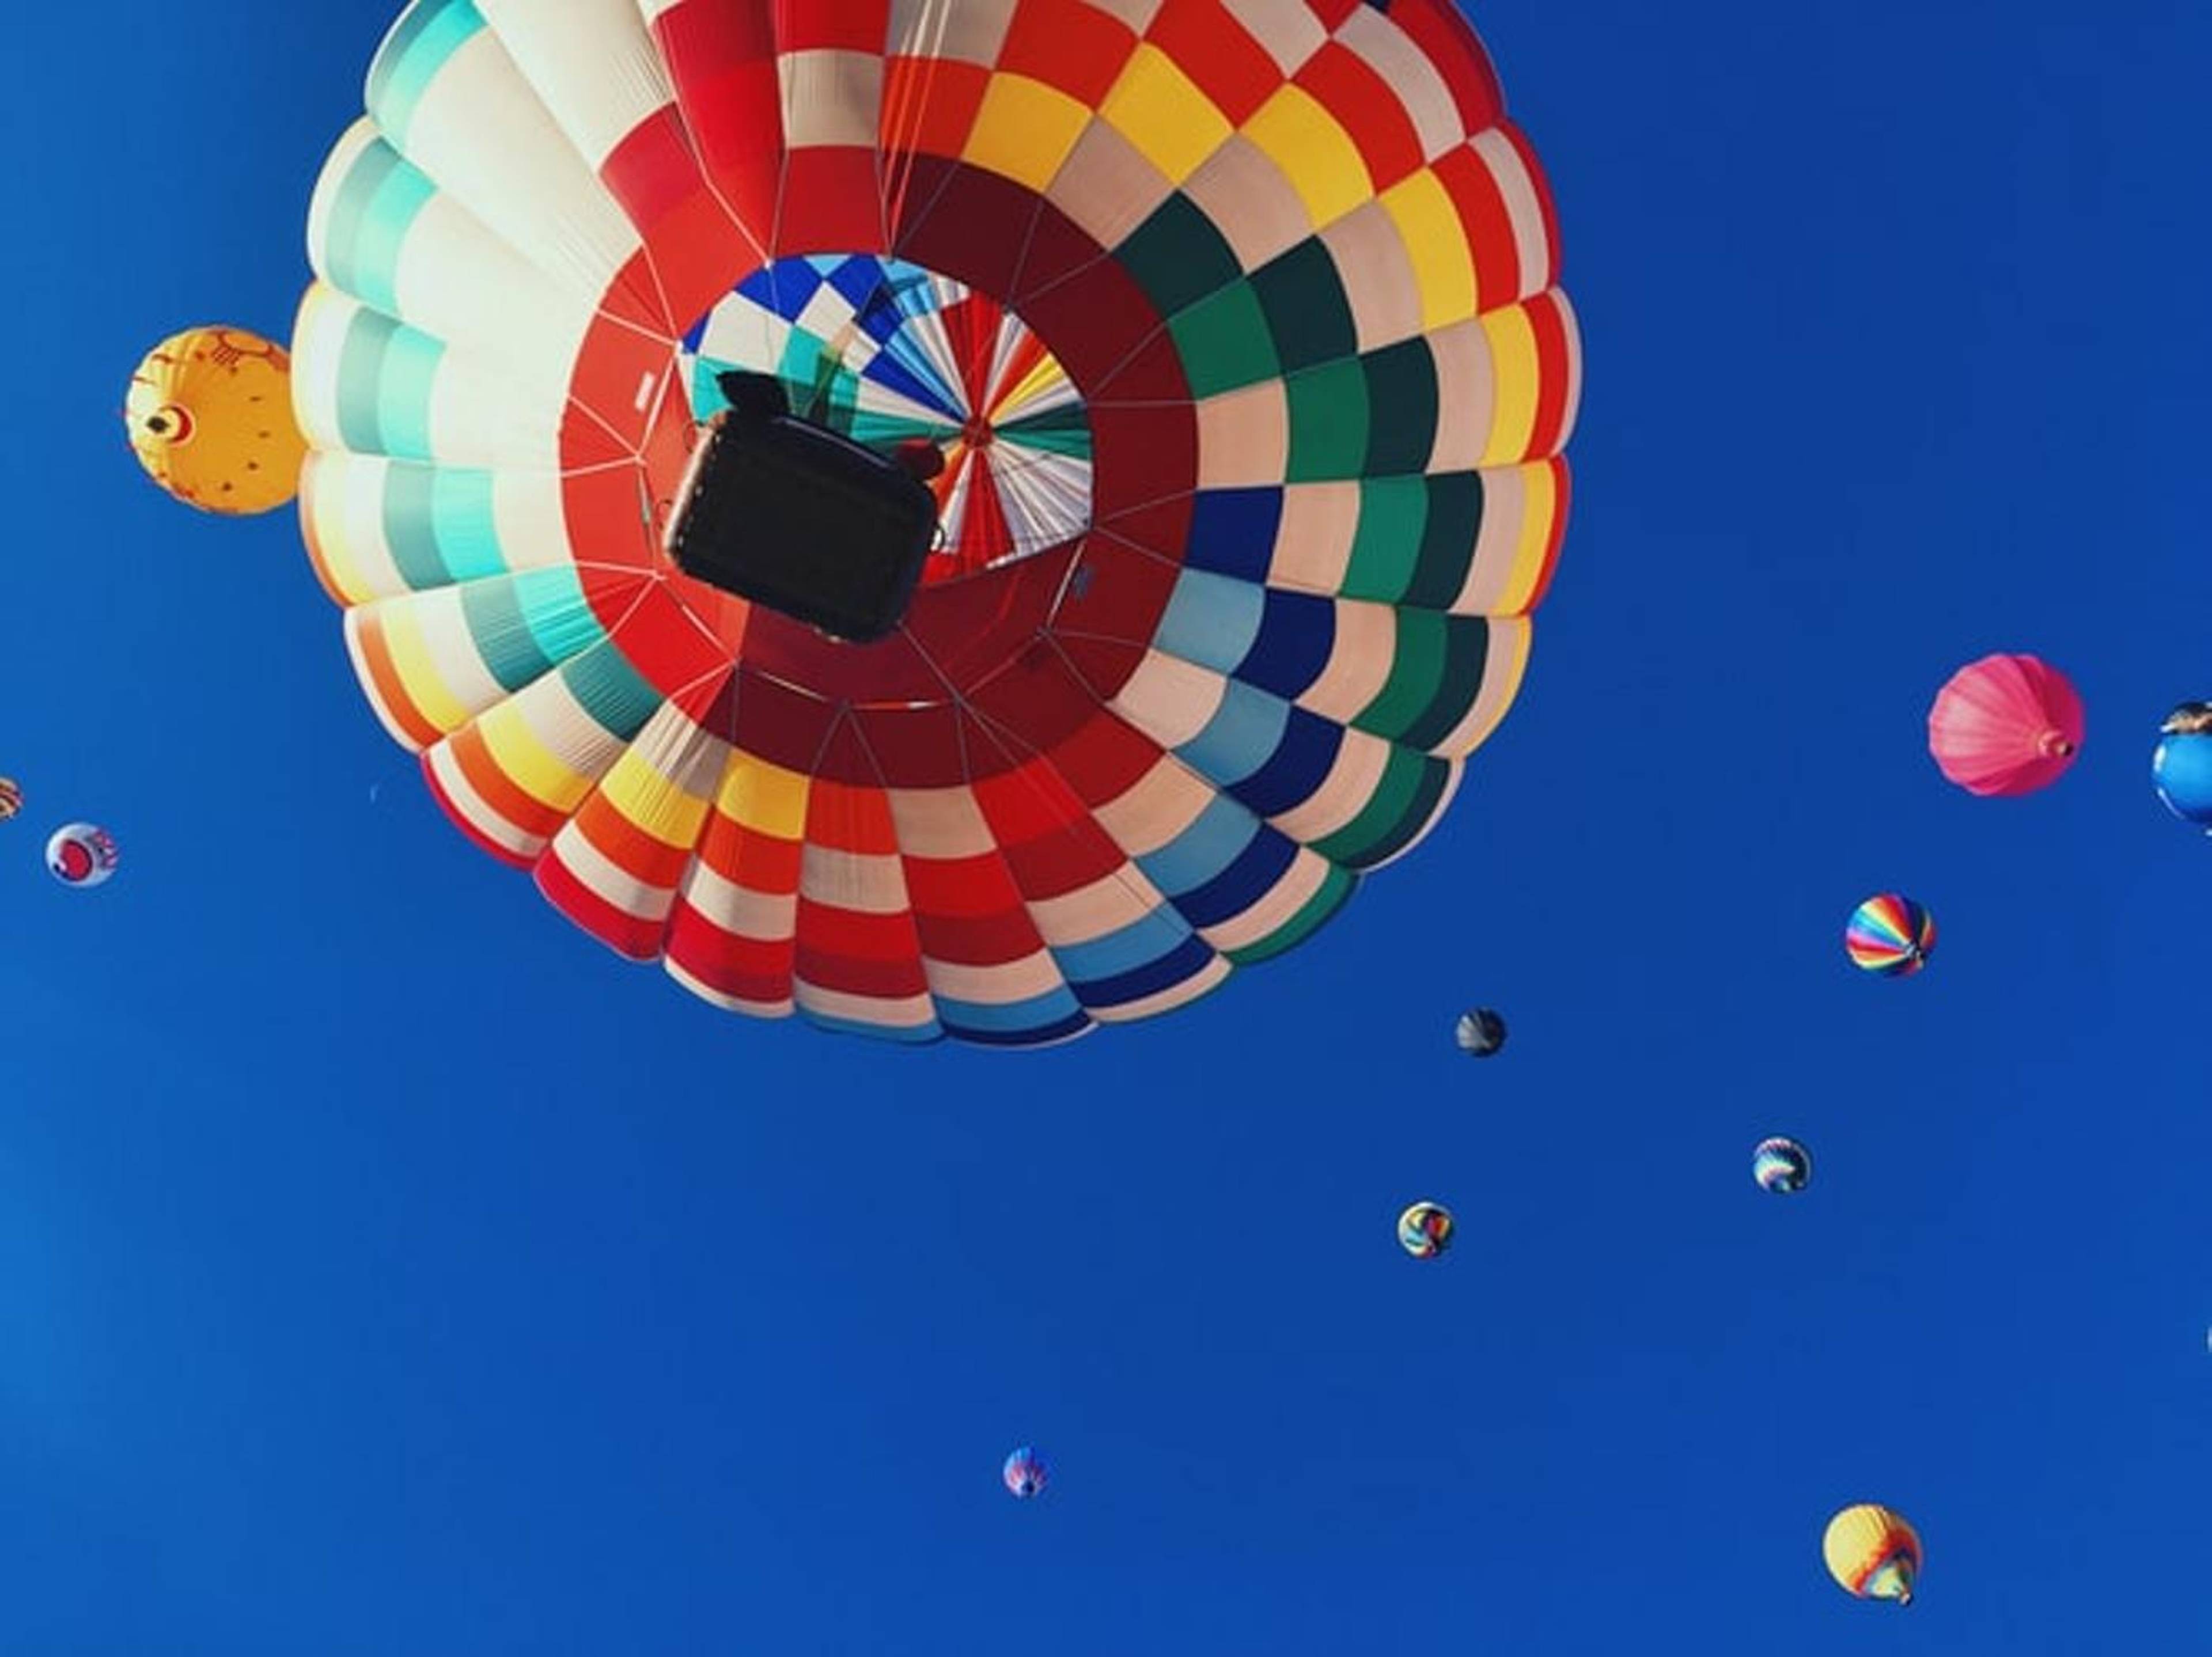 Charleston Hot Air Balloon Festival & Polo Match